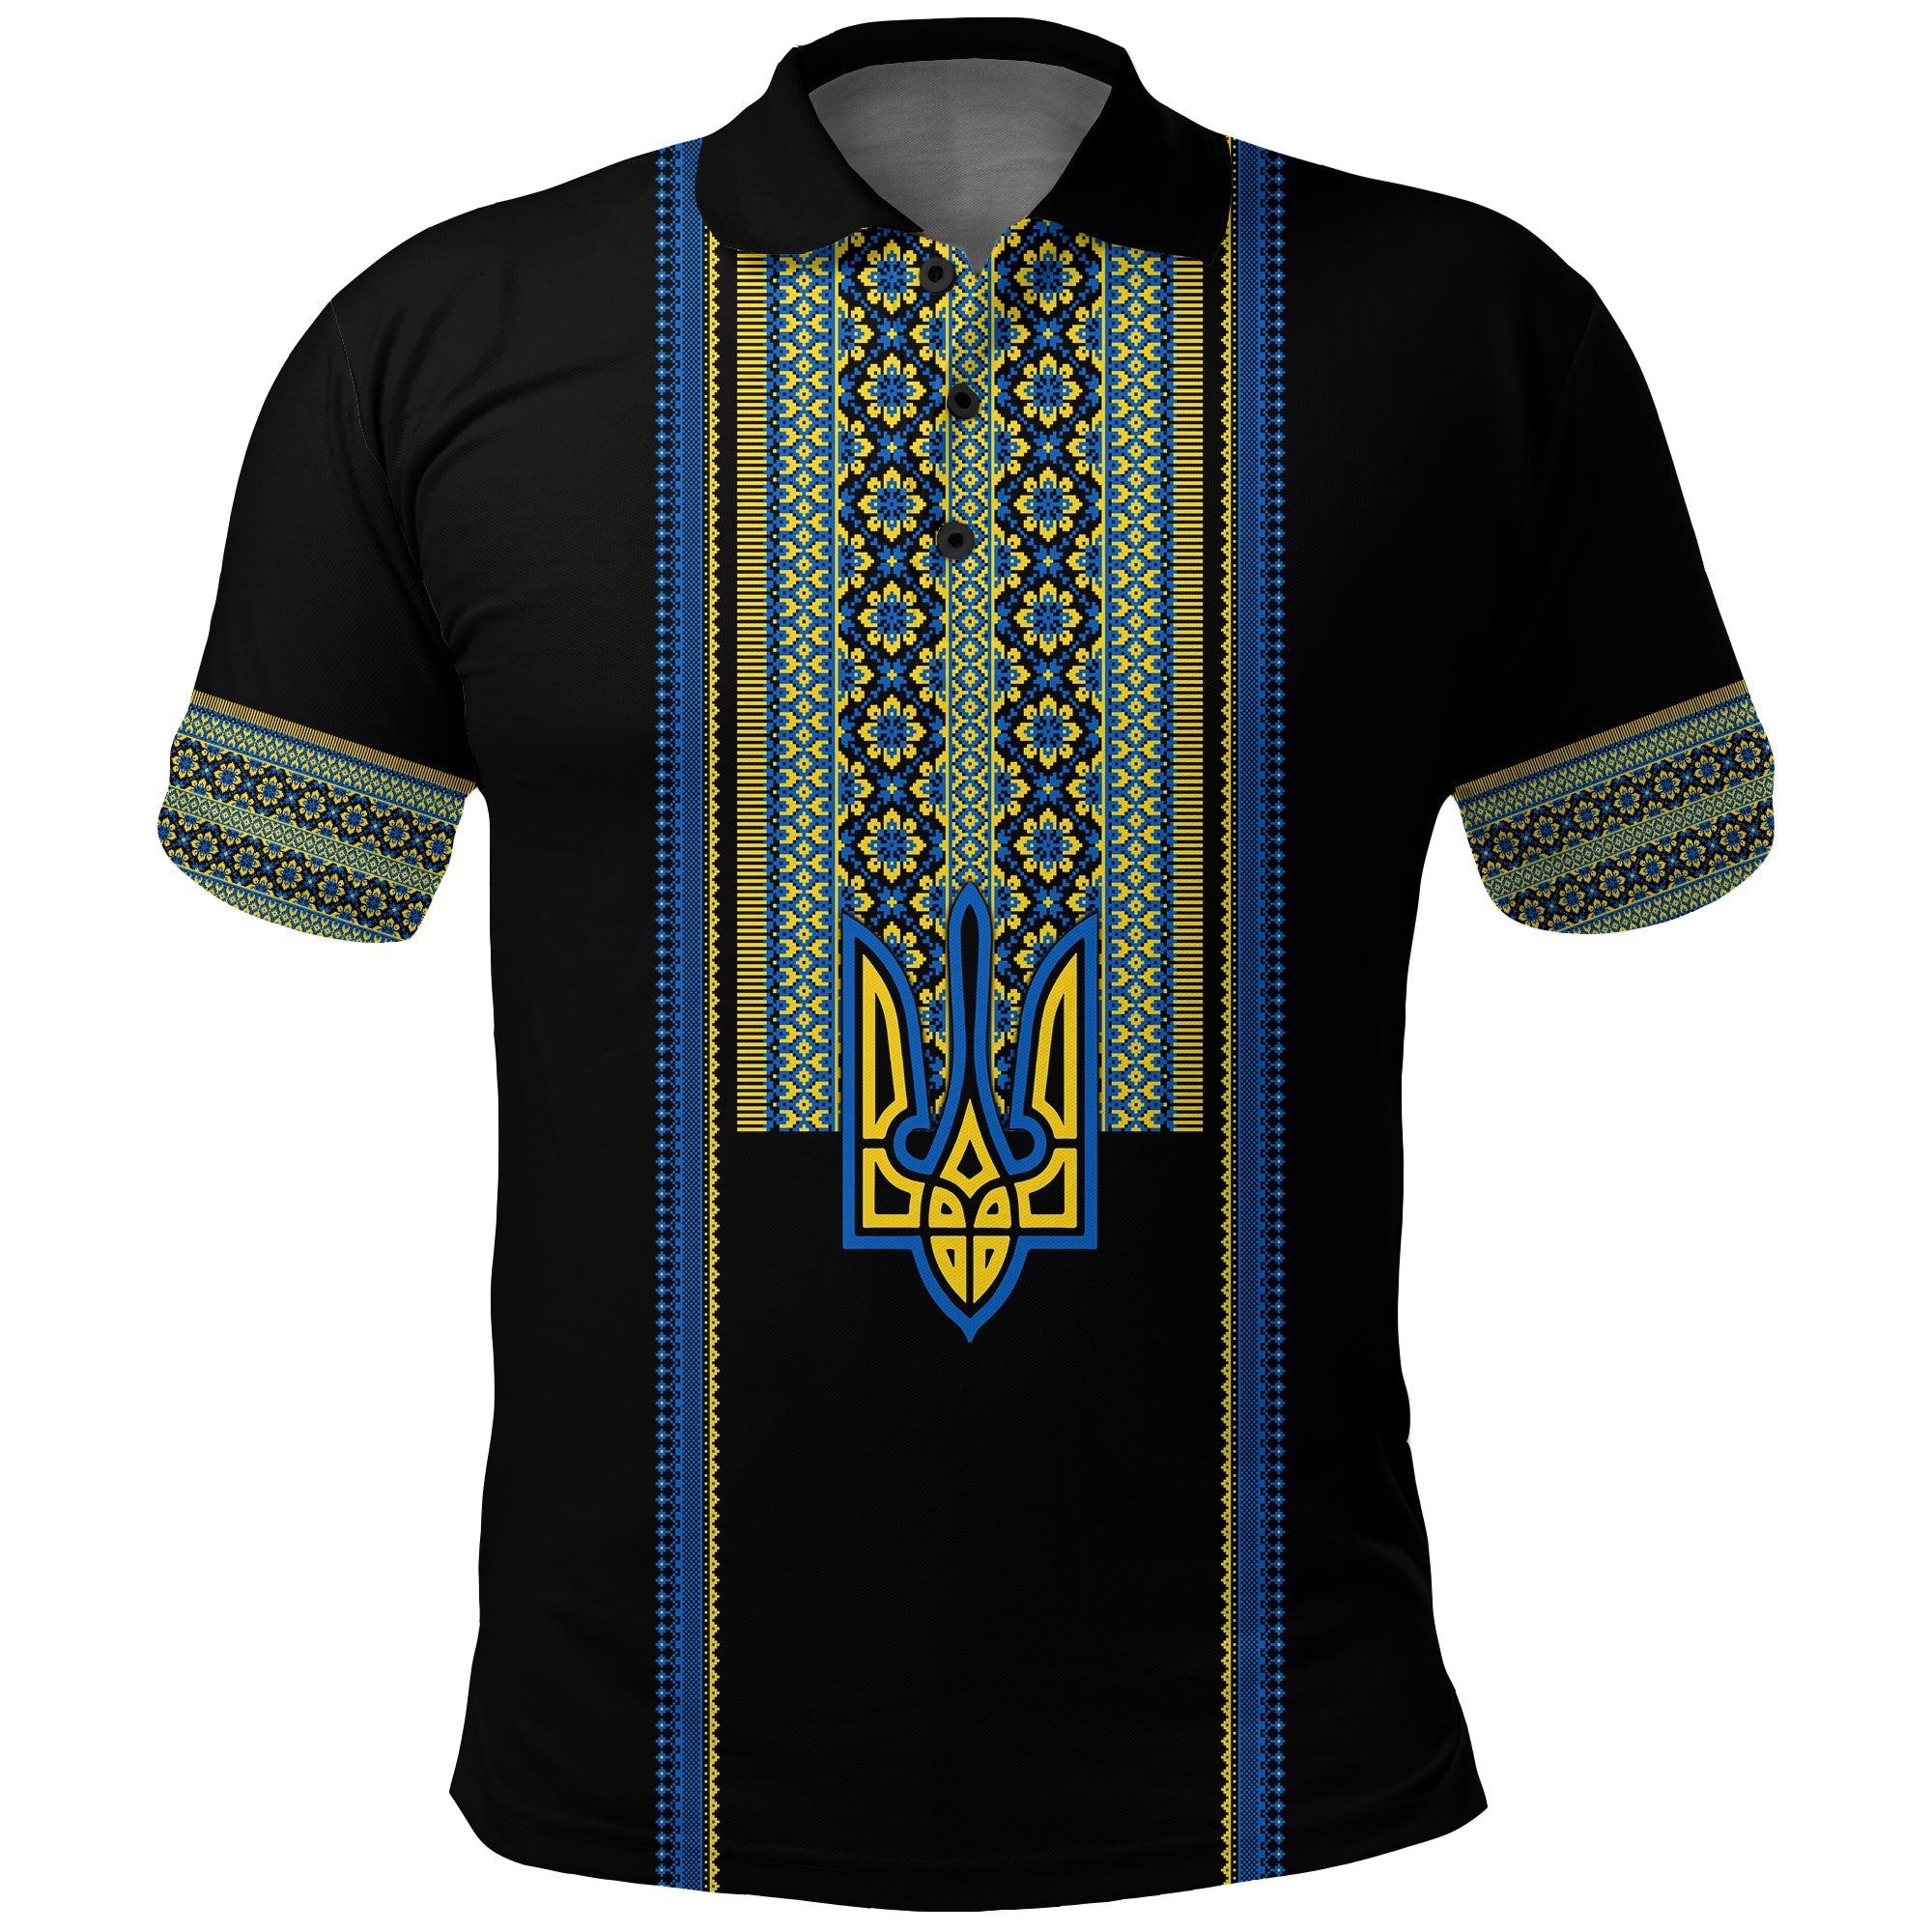 ukraine-vyshyvanka-polo-shirt-unity-day